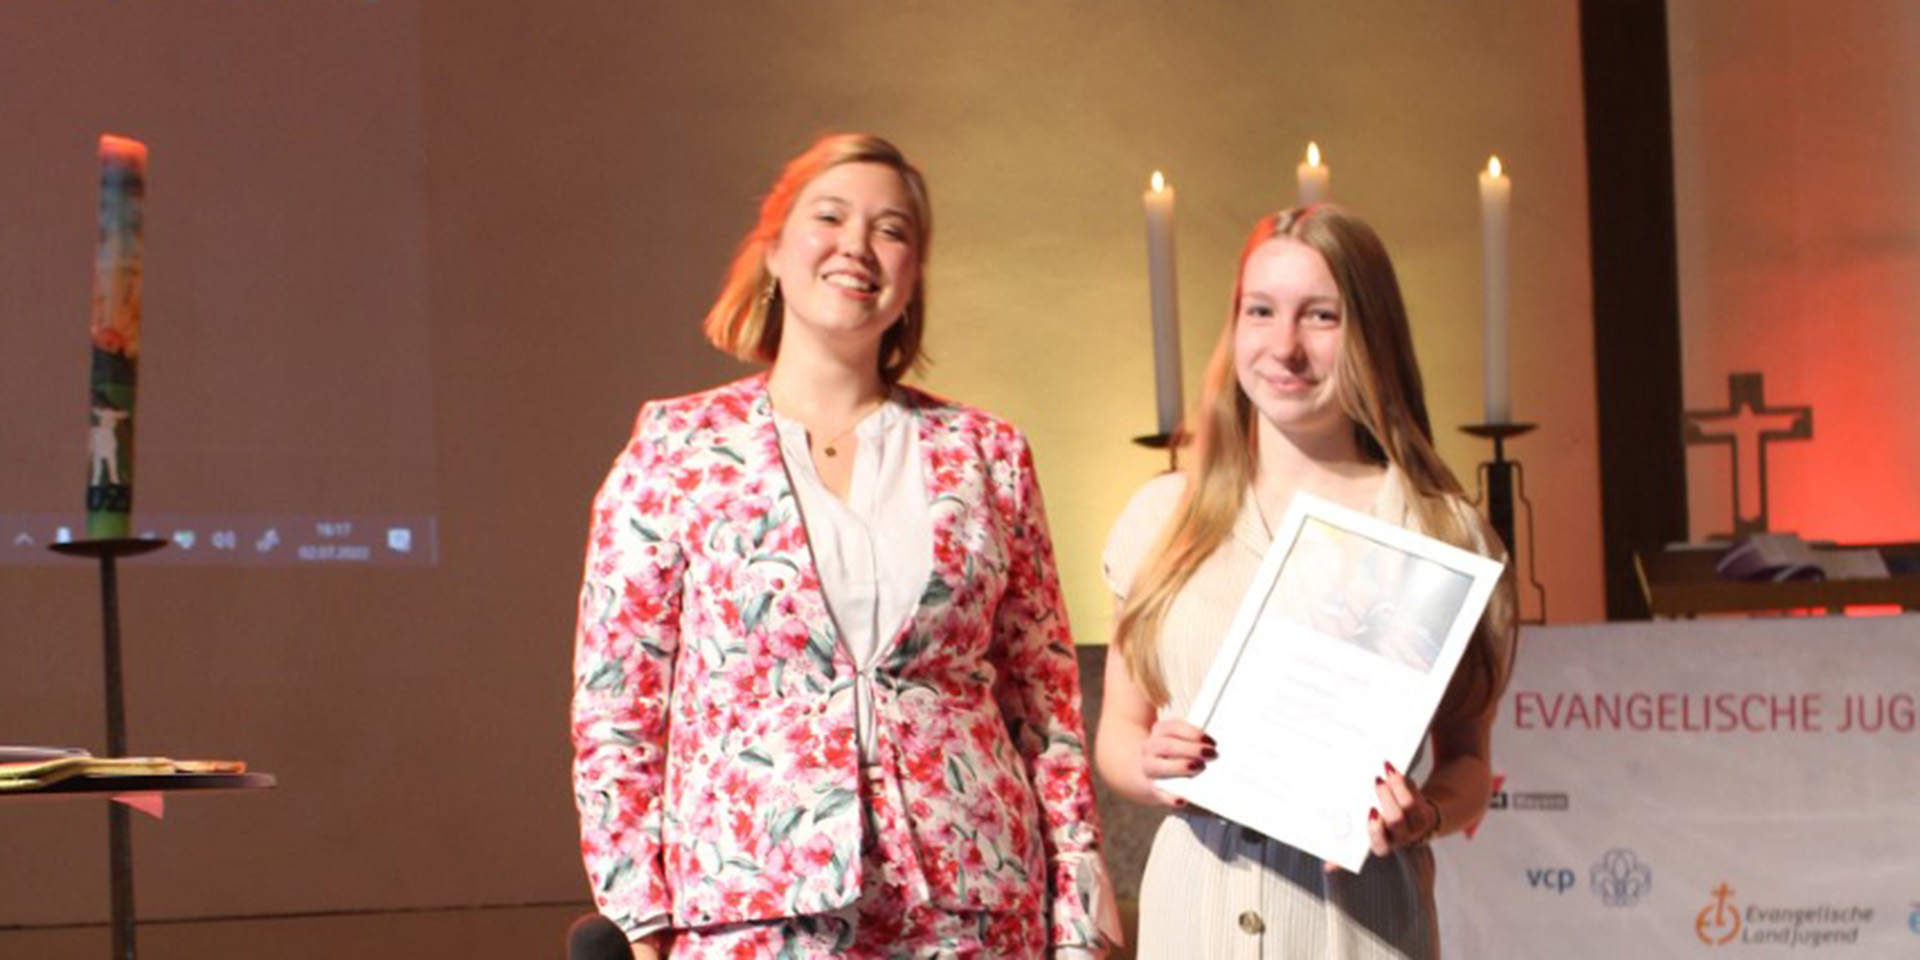 Die Preisträgerinnen in der Kategorie 'Wortkunst' - die Evangelische Jugend Herzogenaurach.